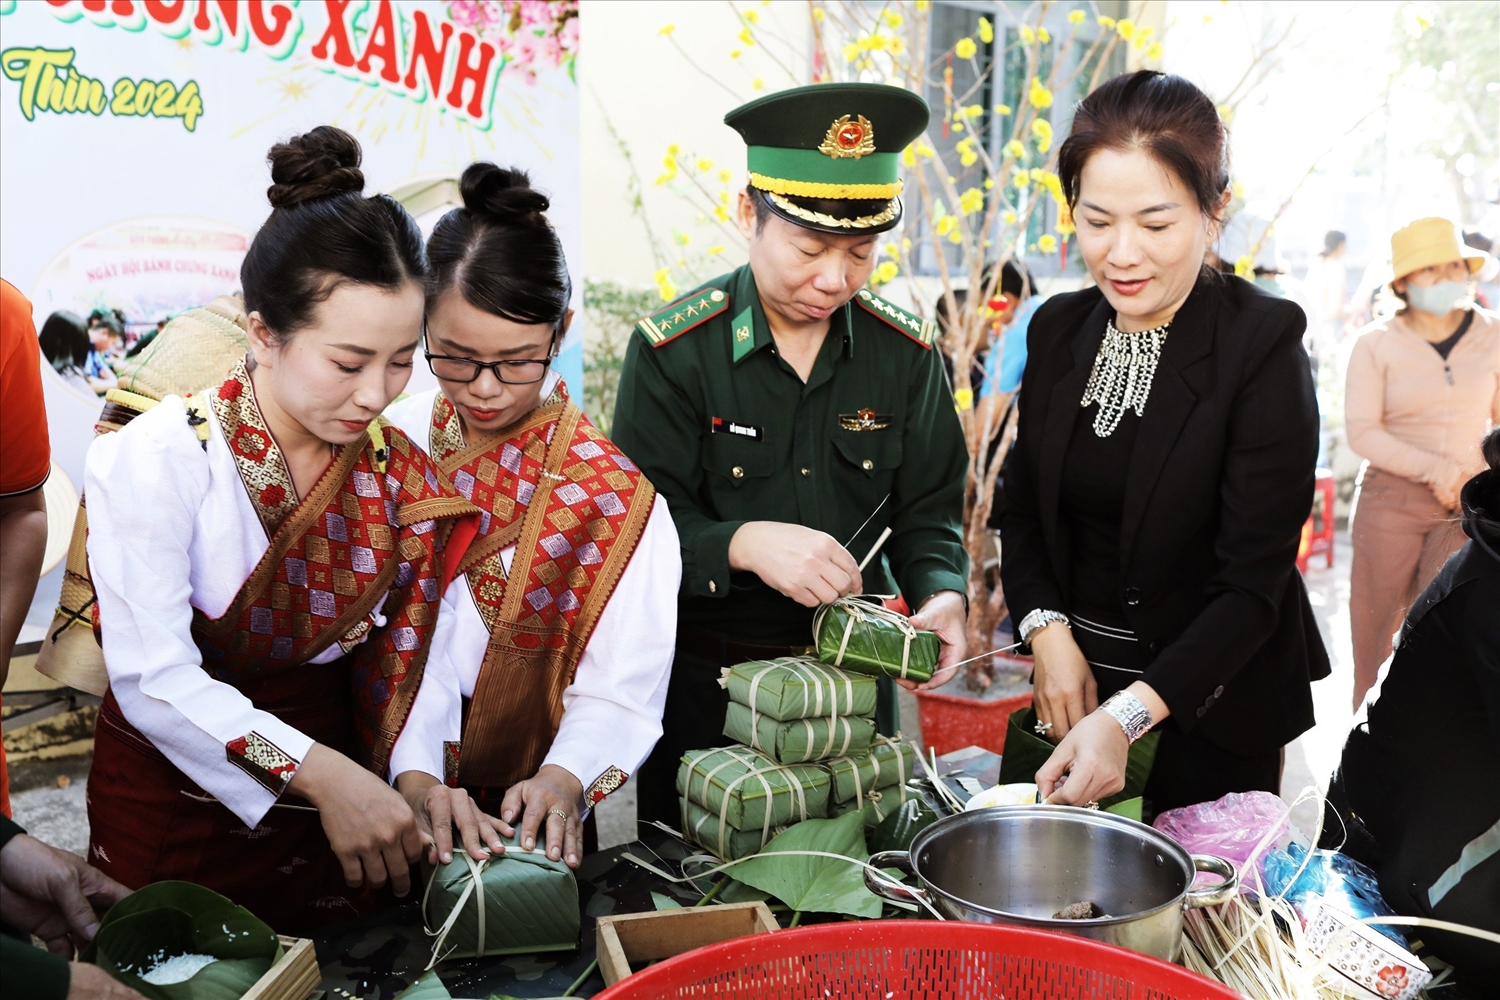 Đại tá Đỗ Quang Thấm, Bí thư Đảng ủy, Chính ủy BĐBP tỉnh Đắk Lắk cùng bà con xã biên giới gói bánh chưng